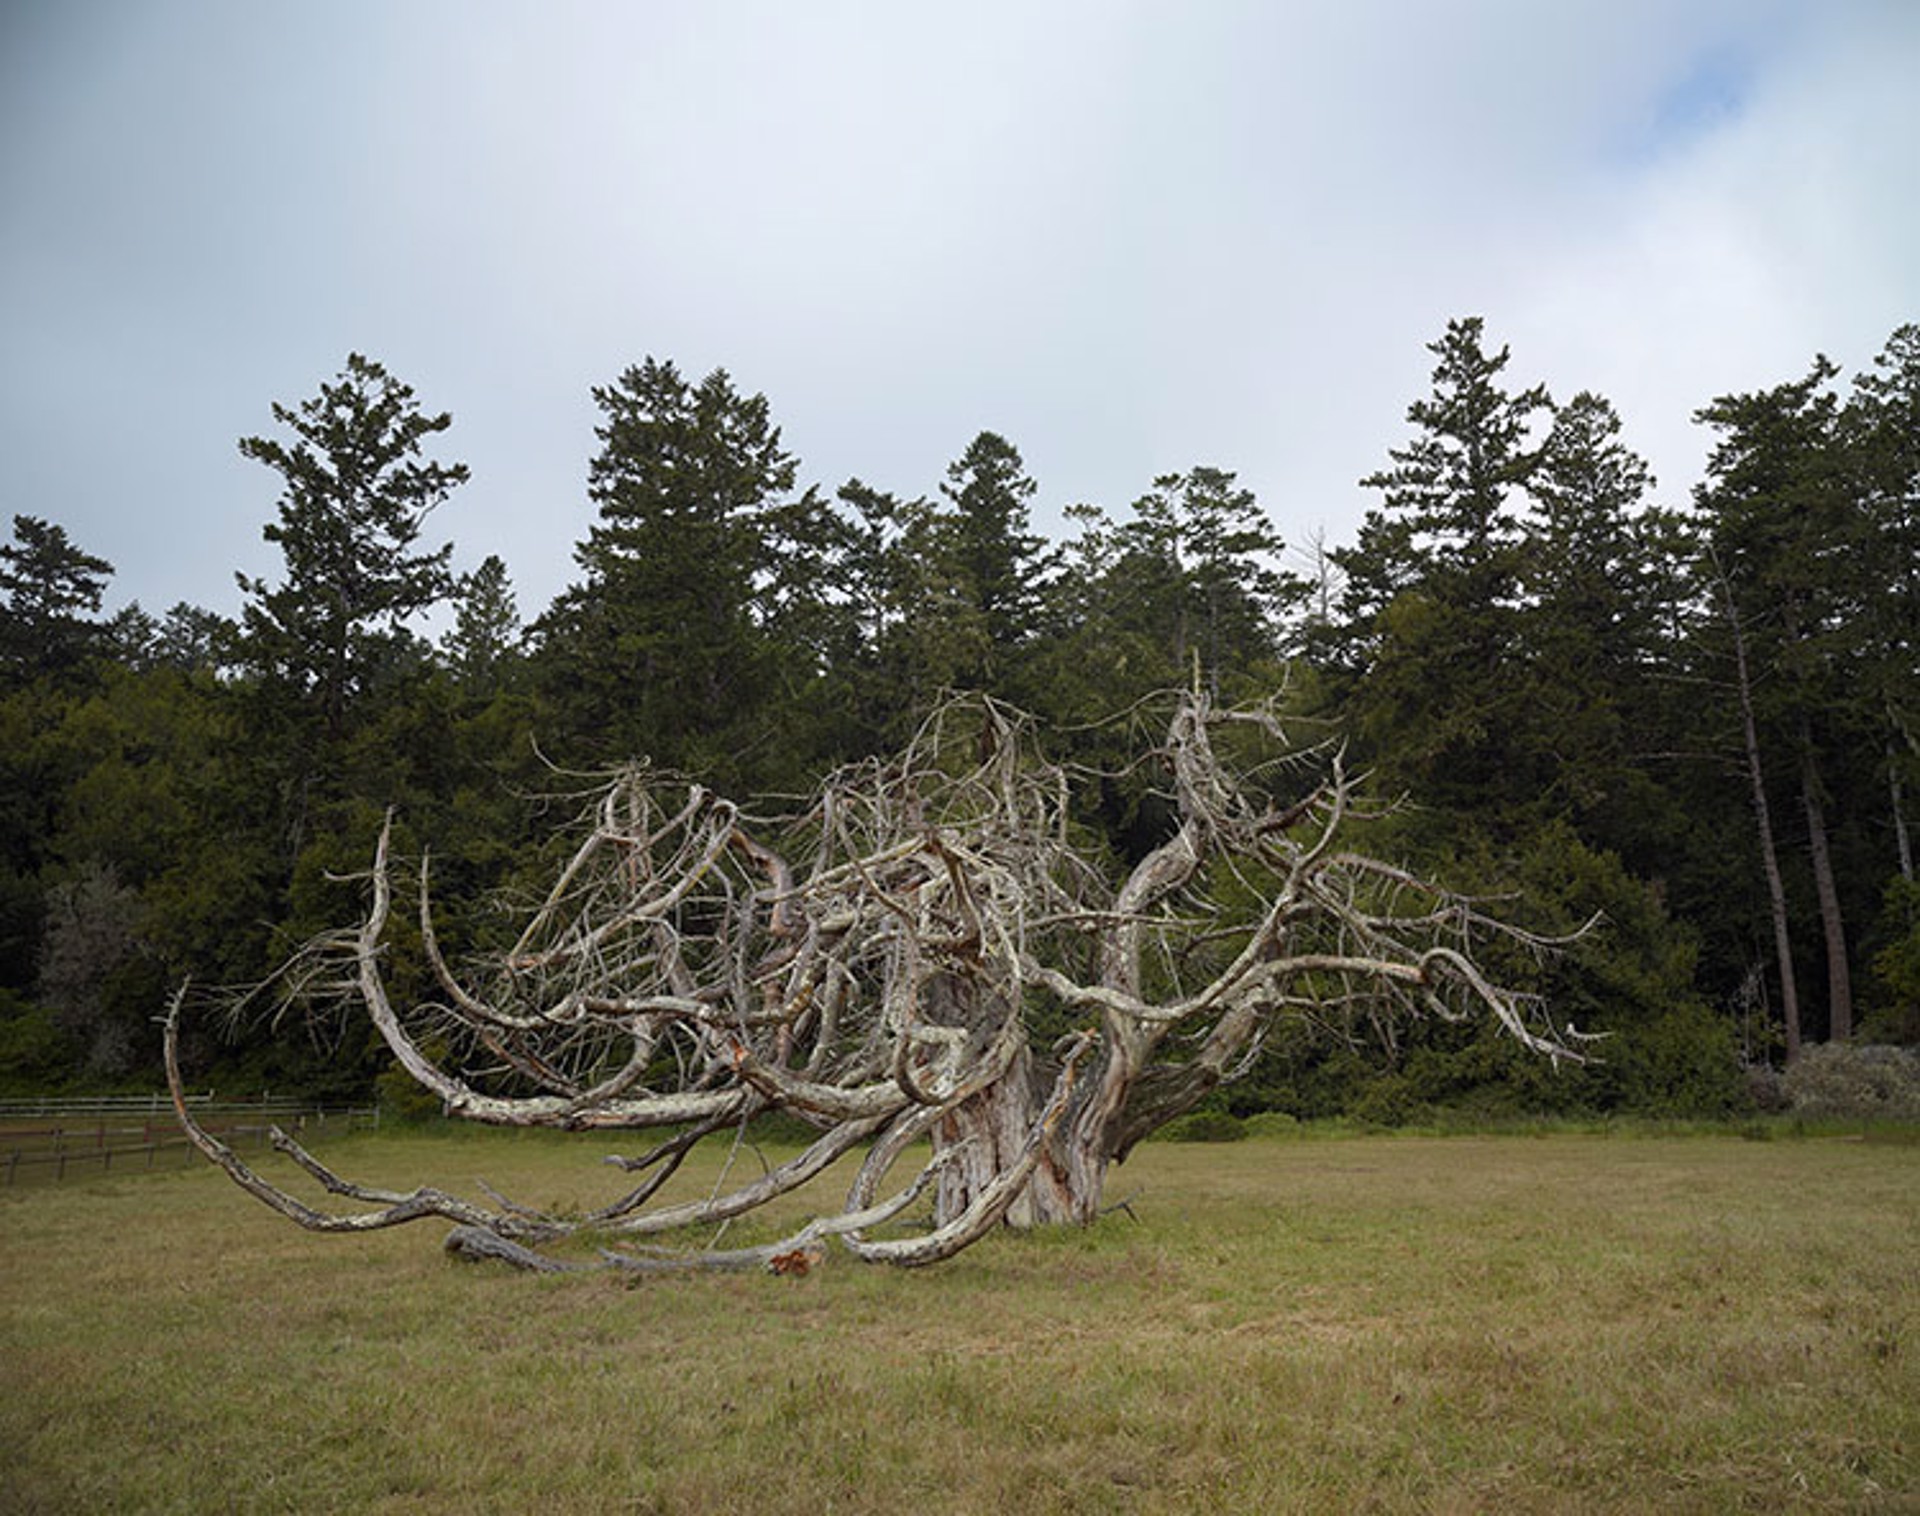 Dwarf Giant Sequoia by Markham Johnson